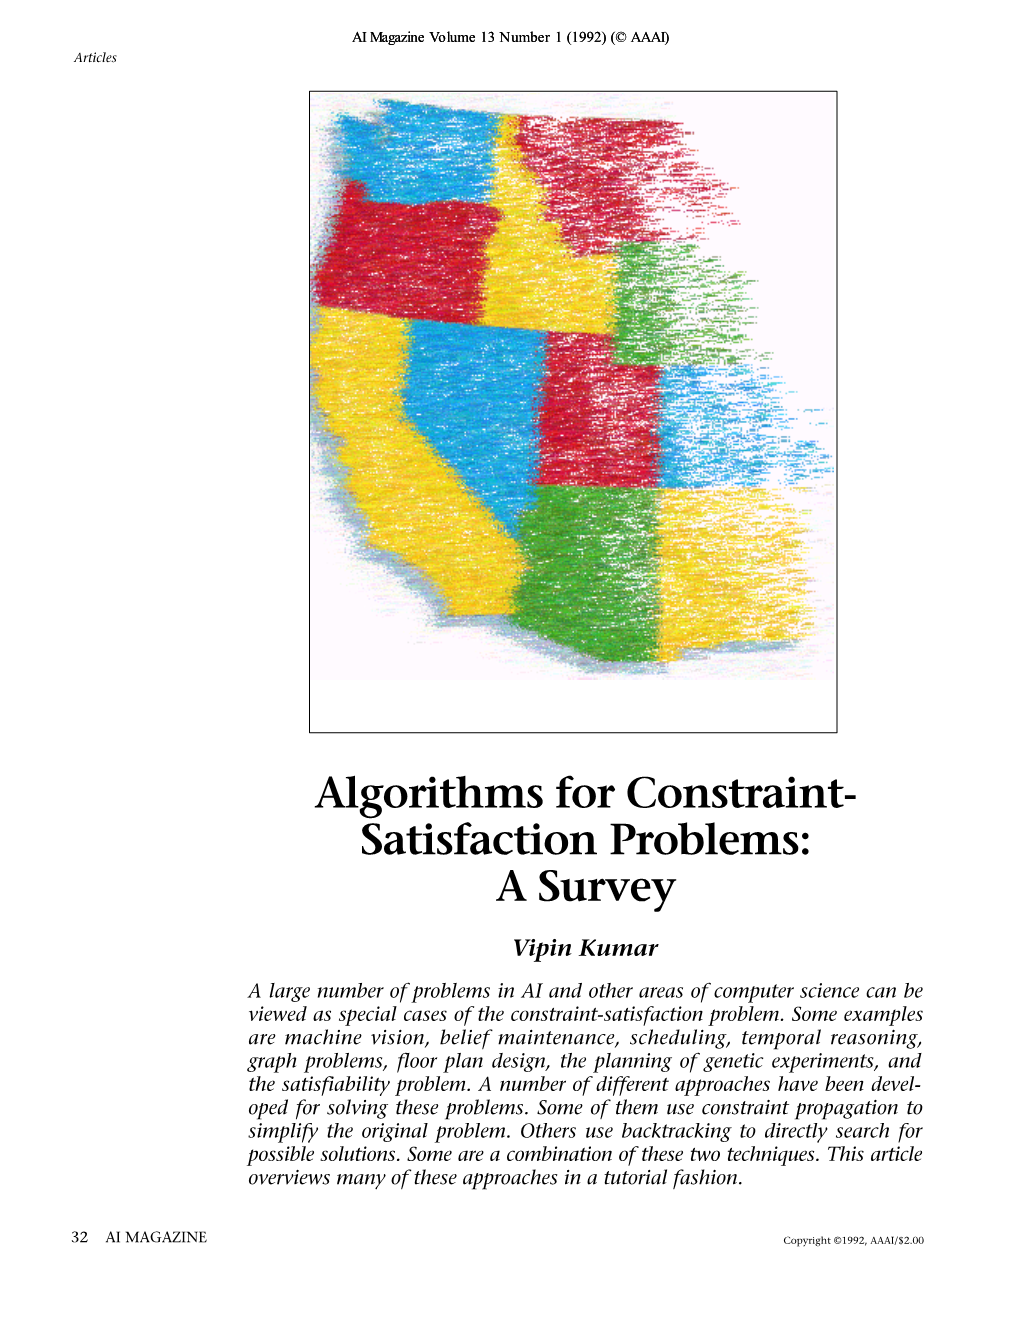 Algorithms for Constraint-Satisfaction Problems: a Survey